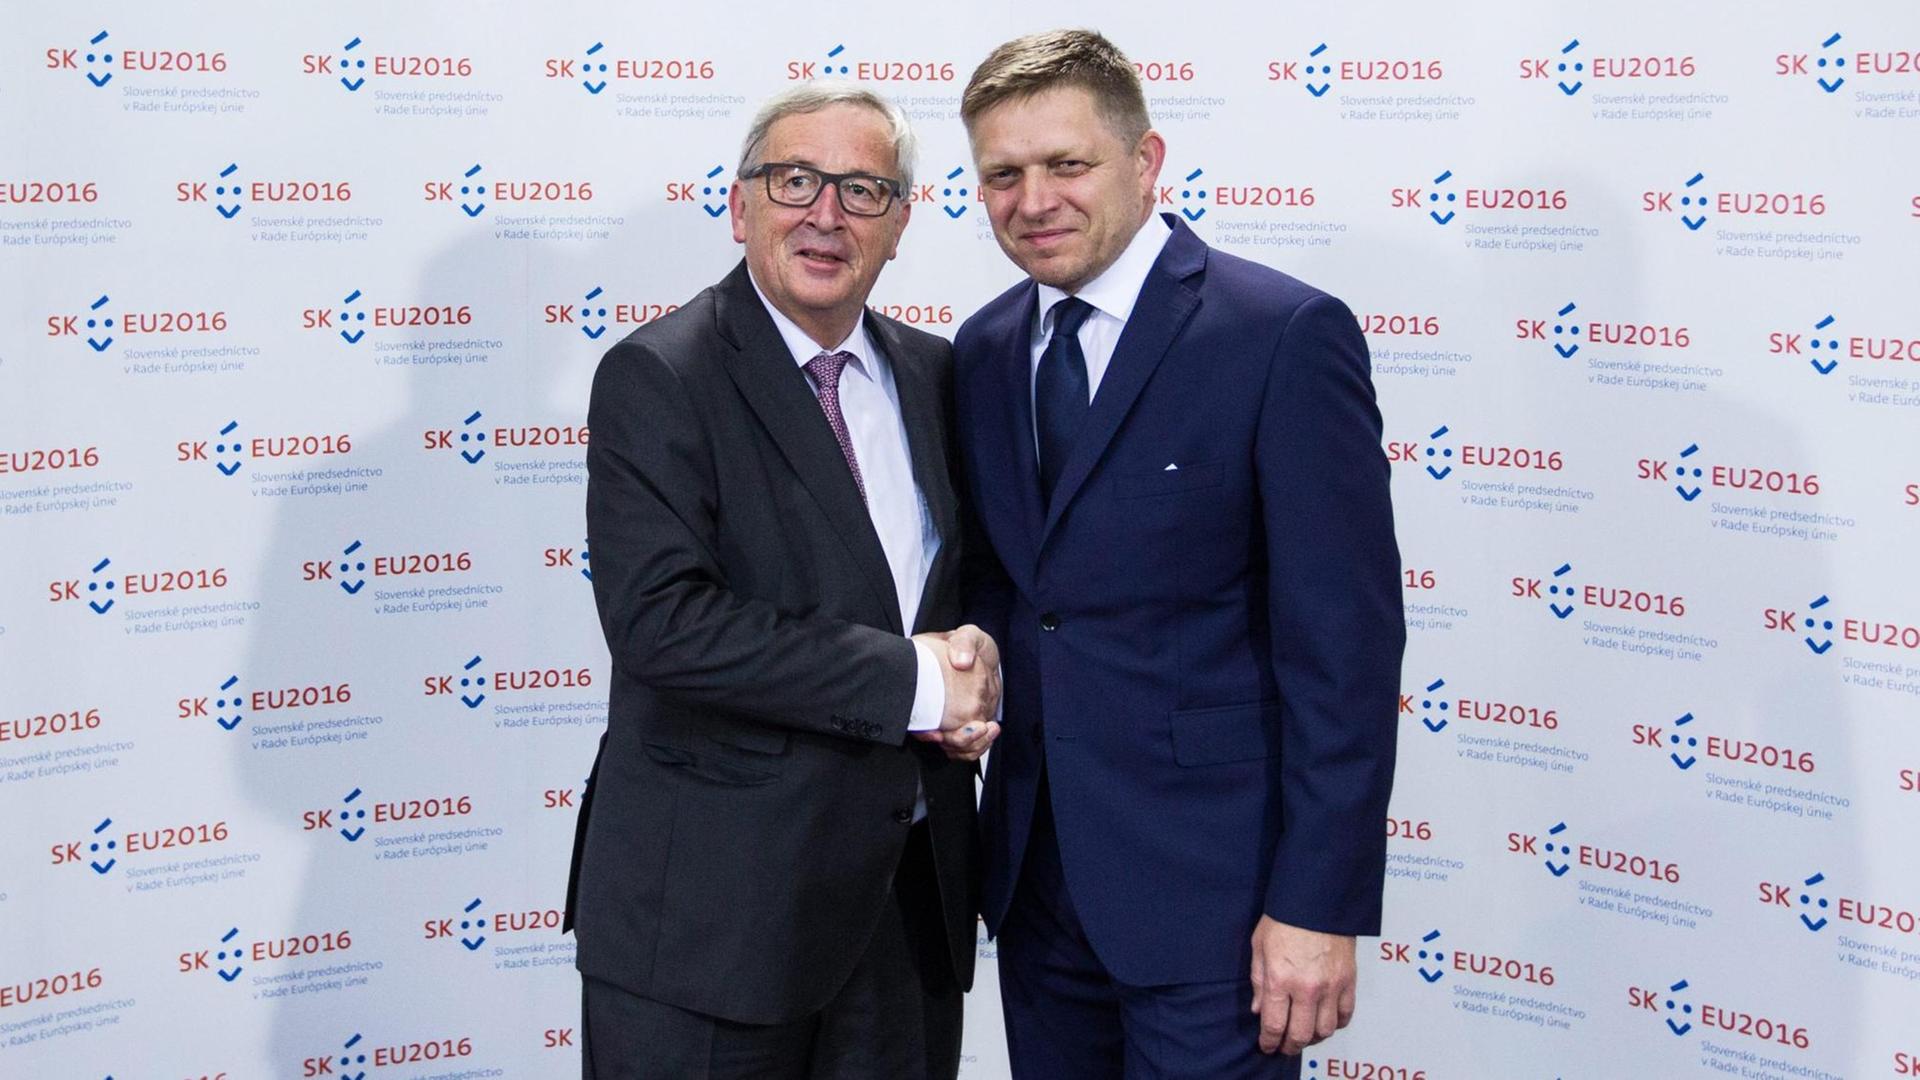 Der Vorsitzende der EU-Kommission, Jean-Claude Juncker, und der slowakische Ministerpräsident Robert Fico am 30.6.2016 in Bratislawa.